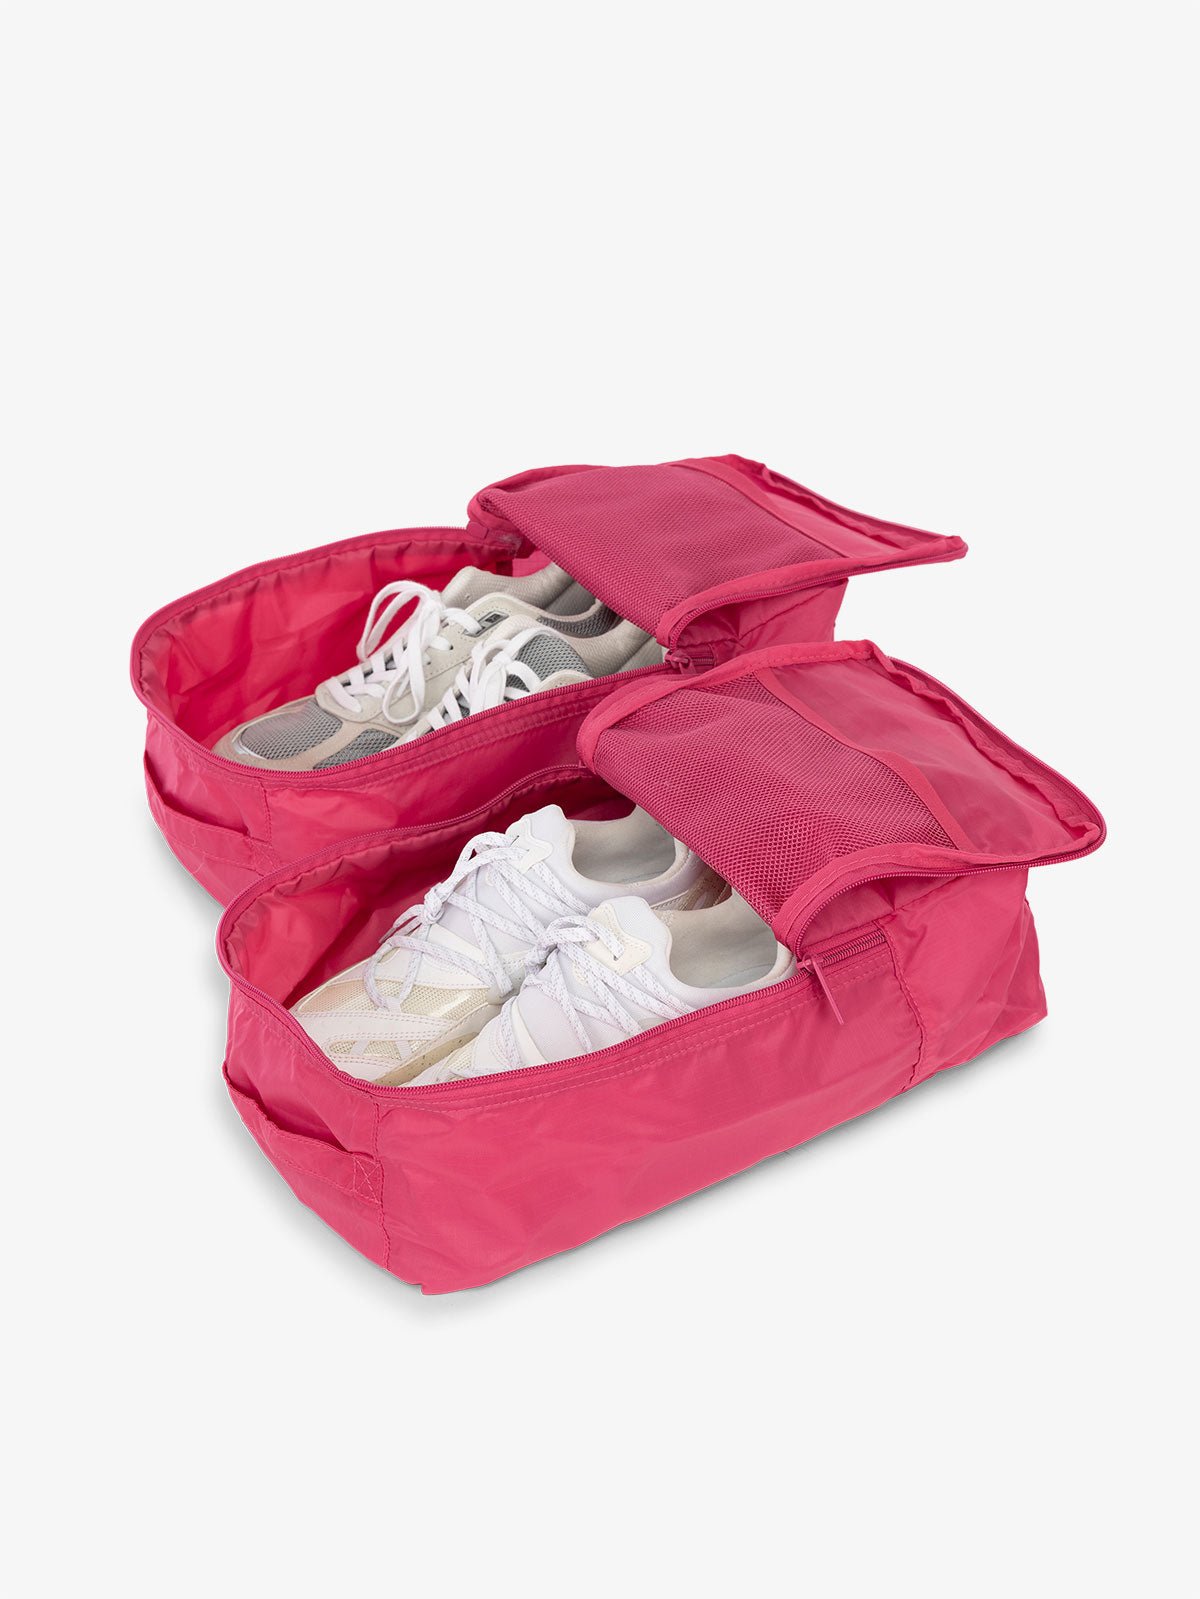 CALPAK Compakt shoe bag set with mesh pockets for travel in pink dragonfruit